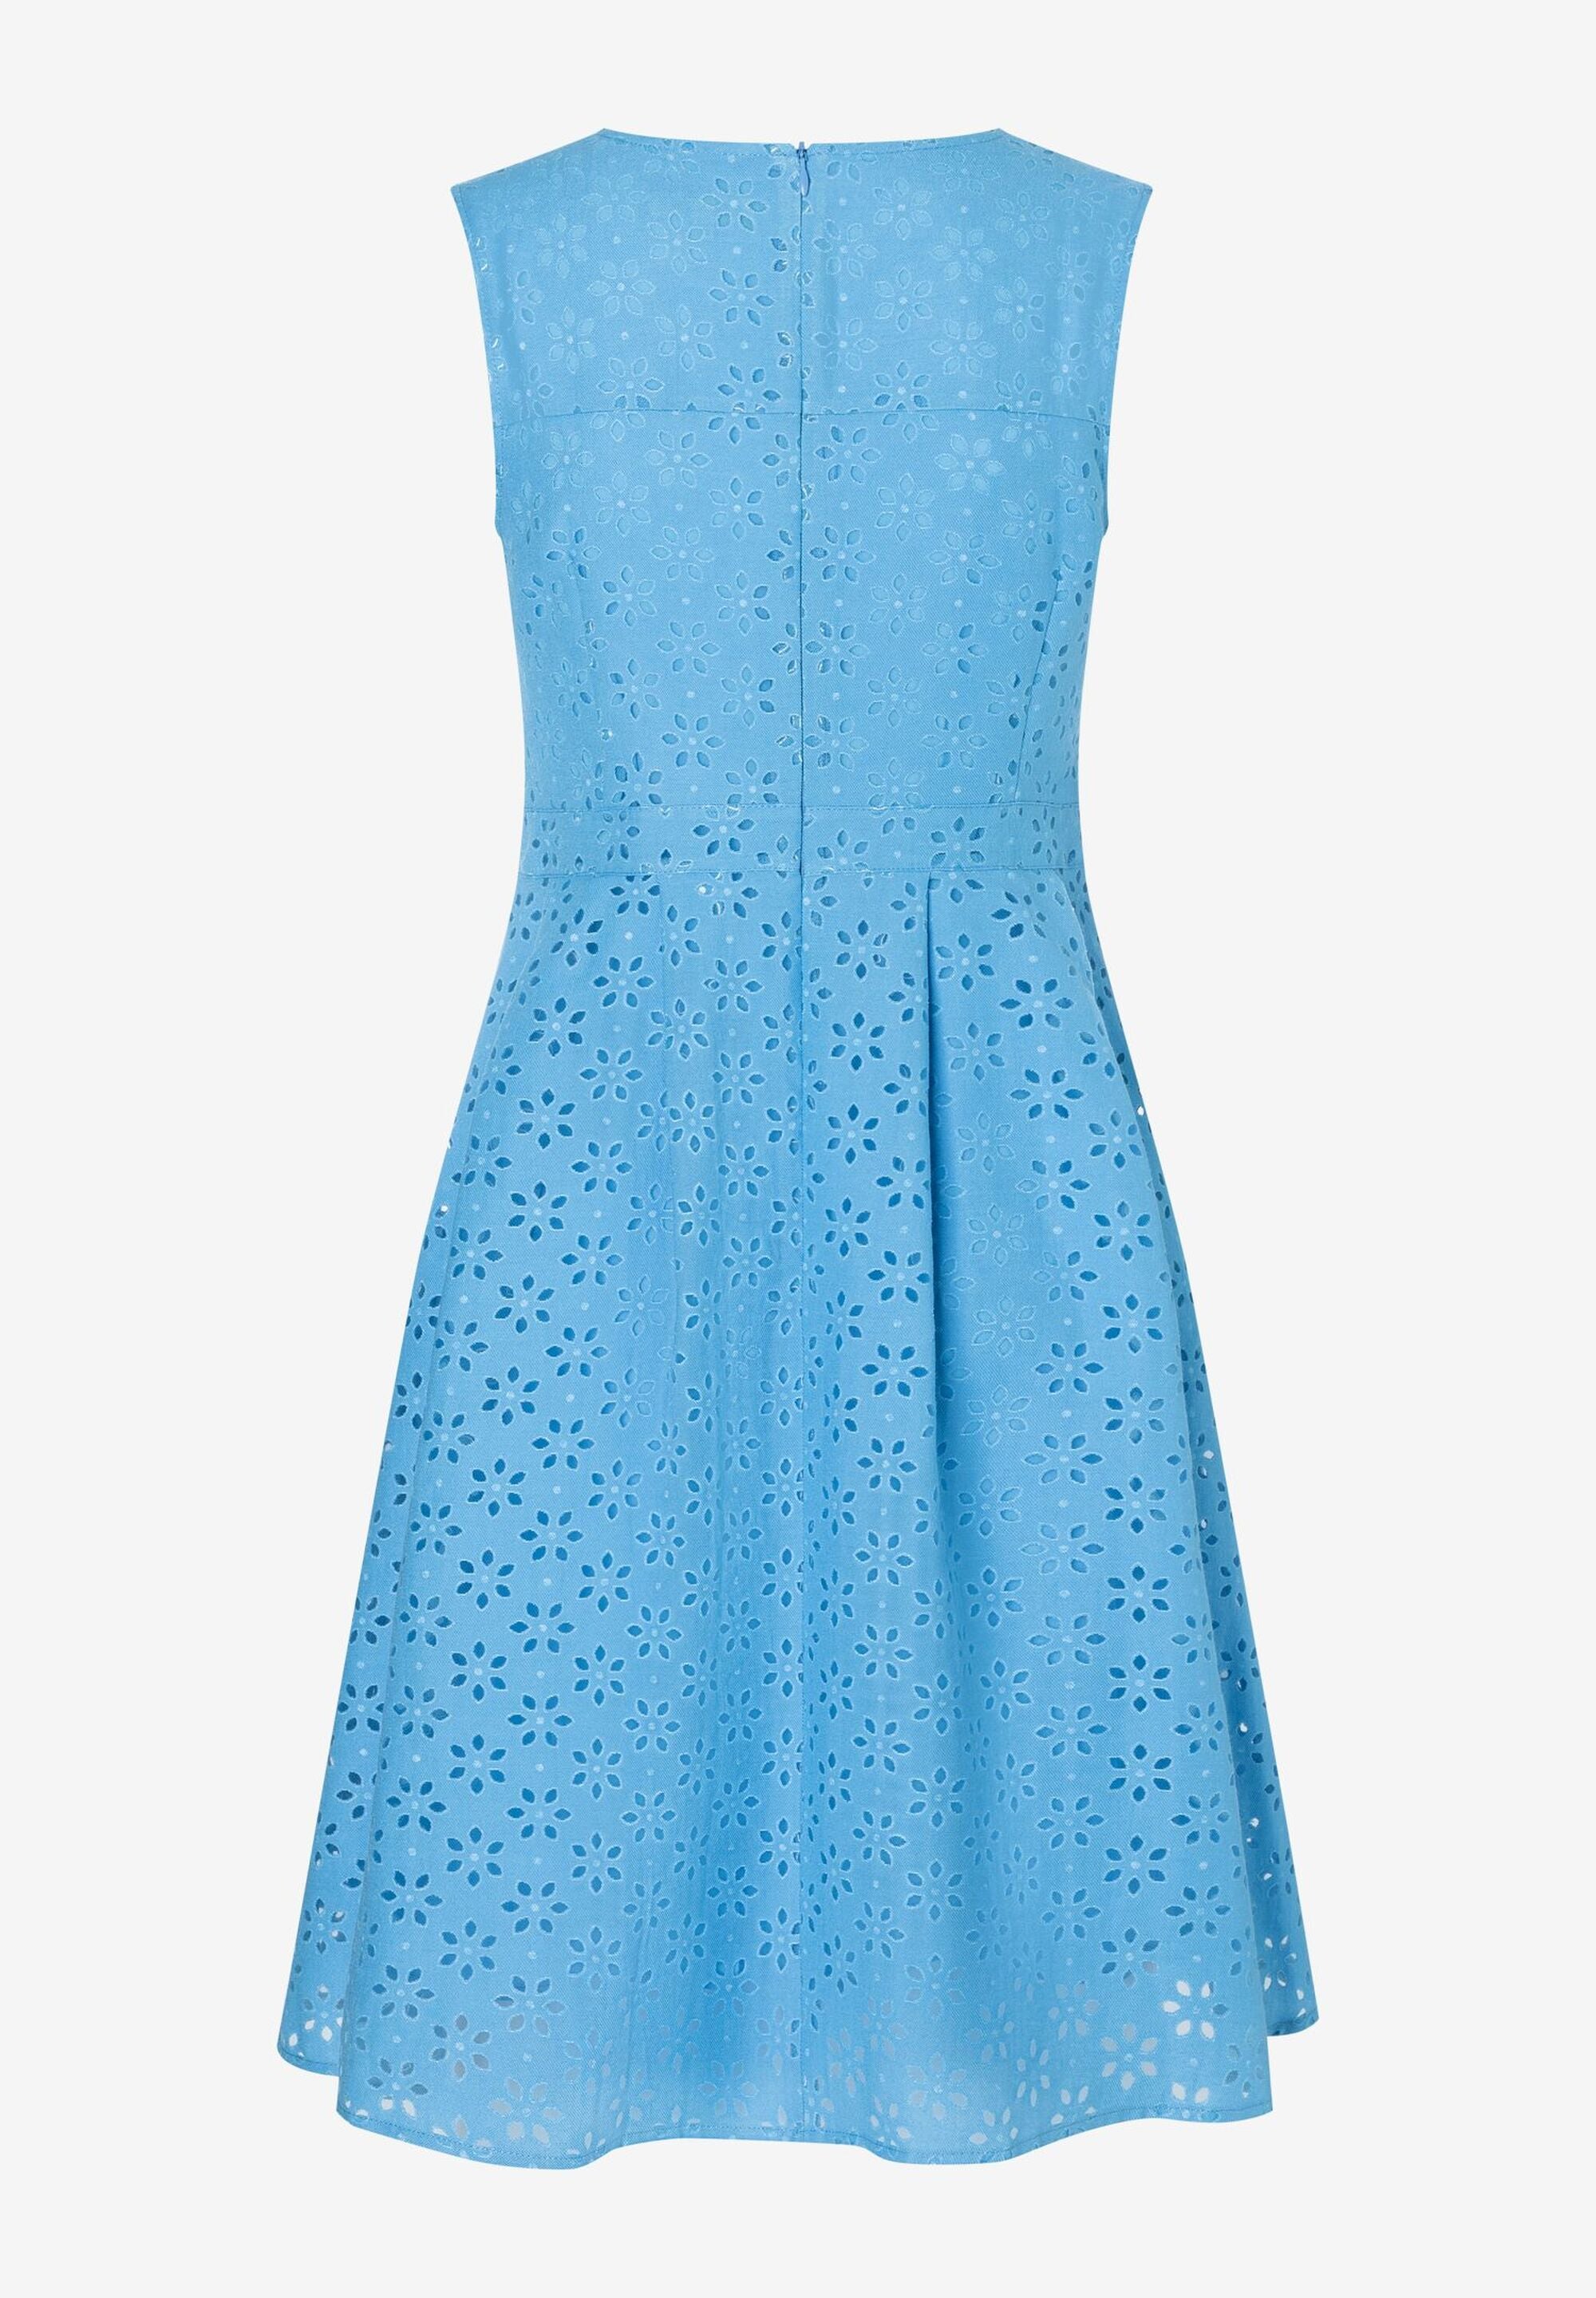 Blue Sleeveless A-Line Short Dress_02